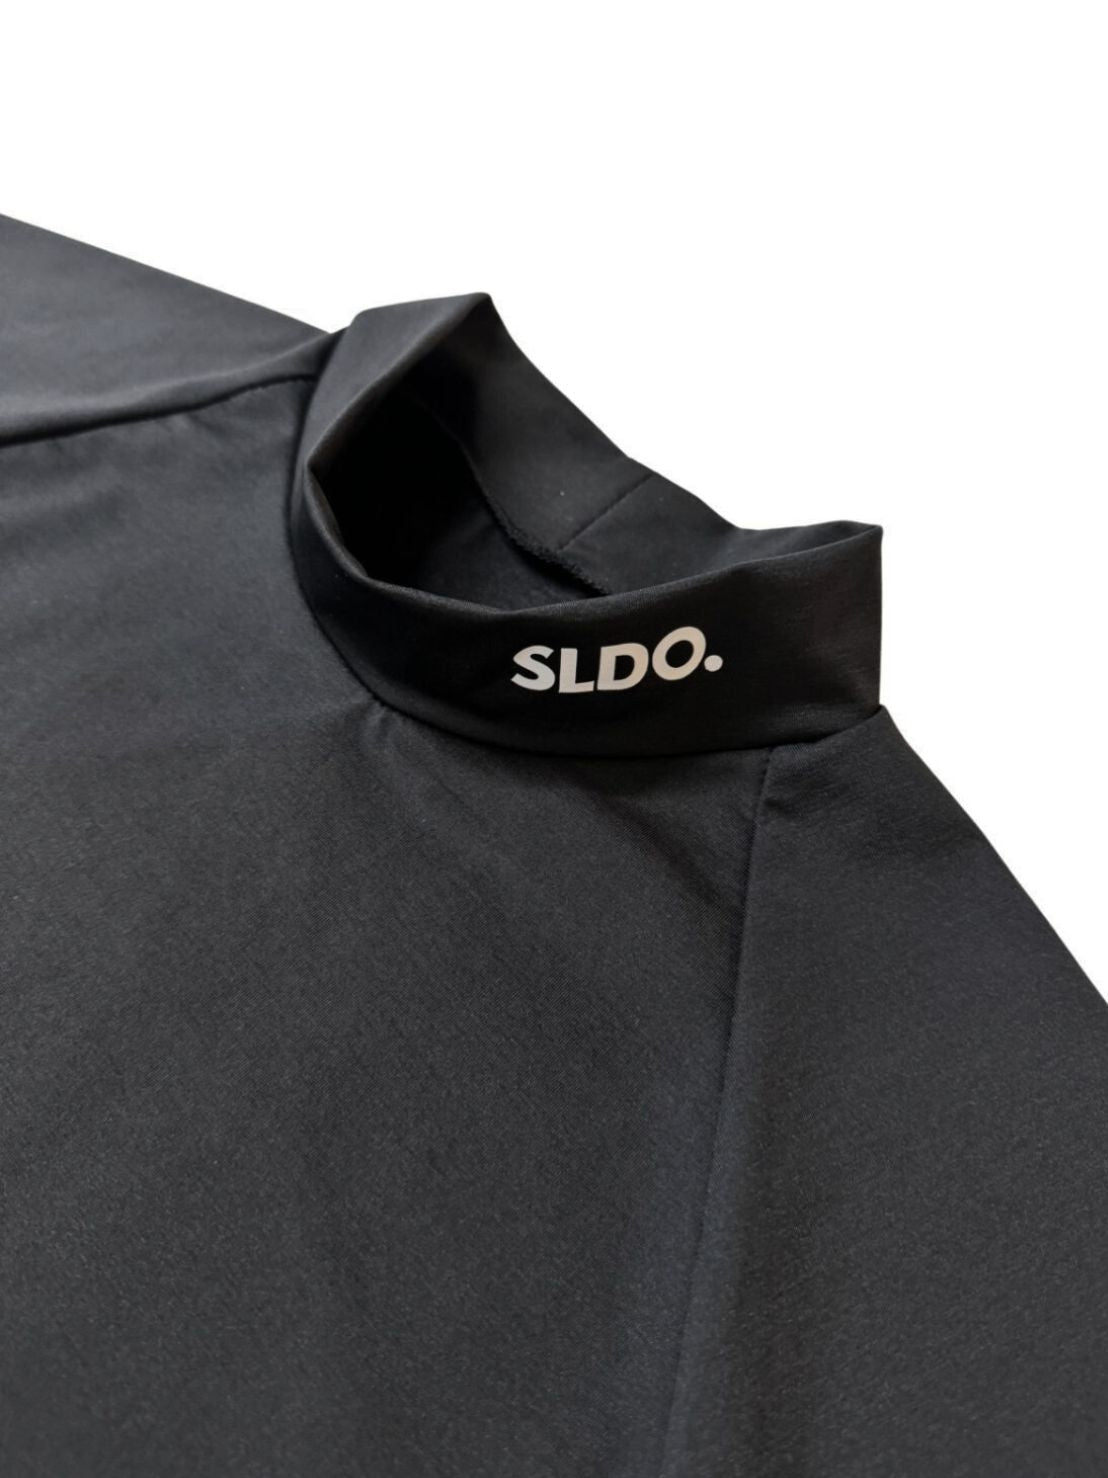 半袖モックネック カットソー NEW STD LOGO/BLACK – SLDO.